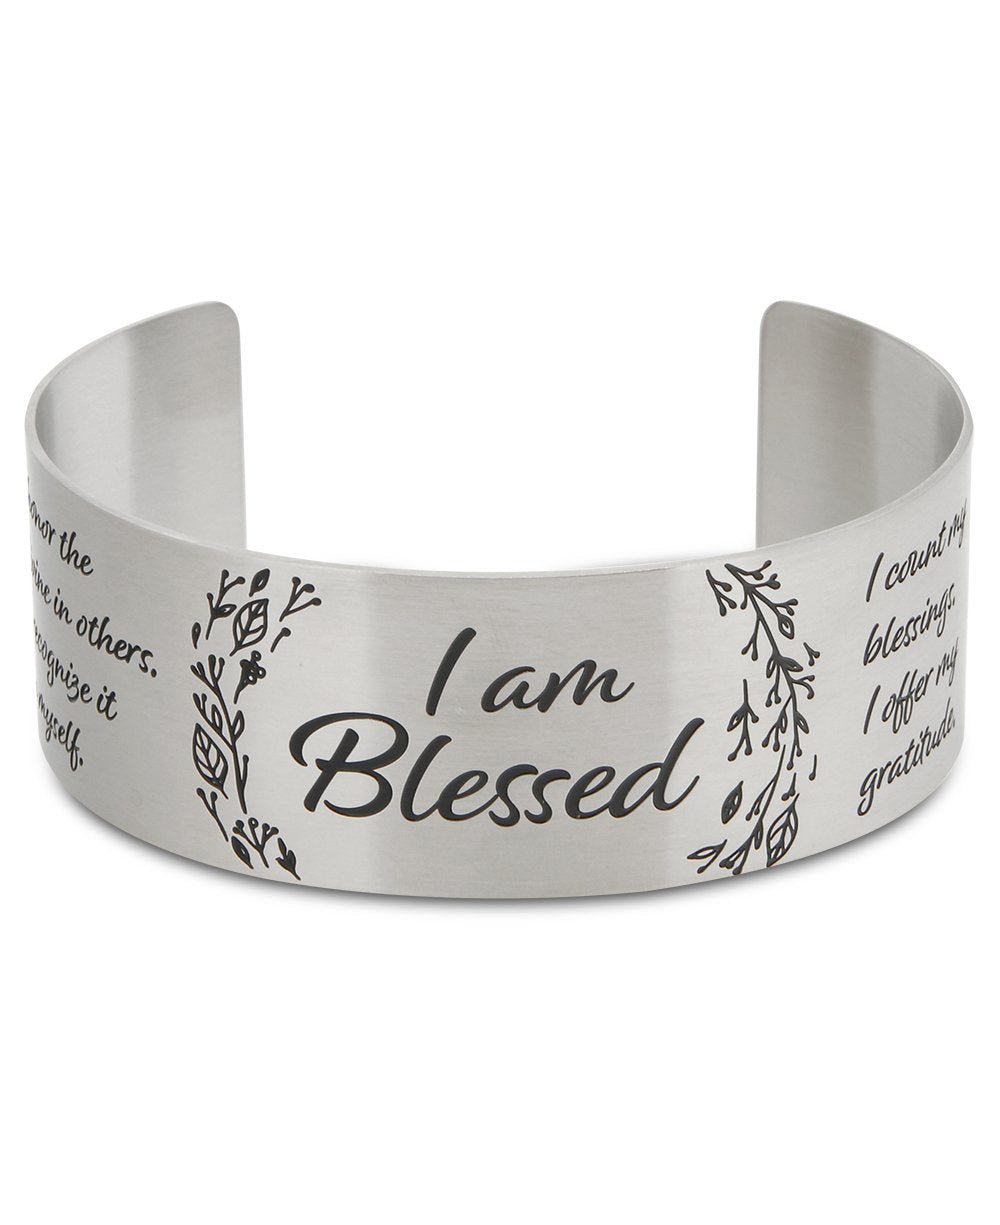 I am Blessed Affirmation Stainless Steel Adjustable Cuff Bracelet - Bracelets